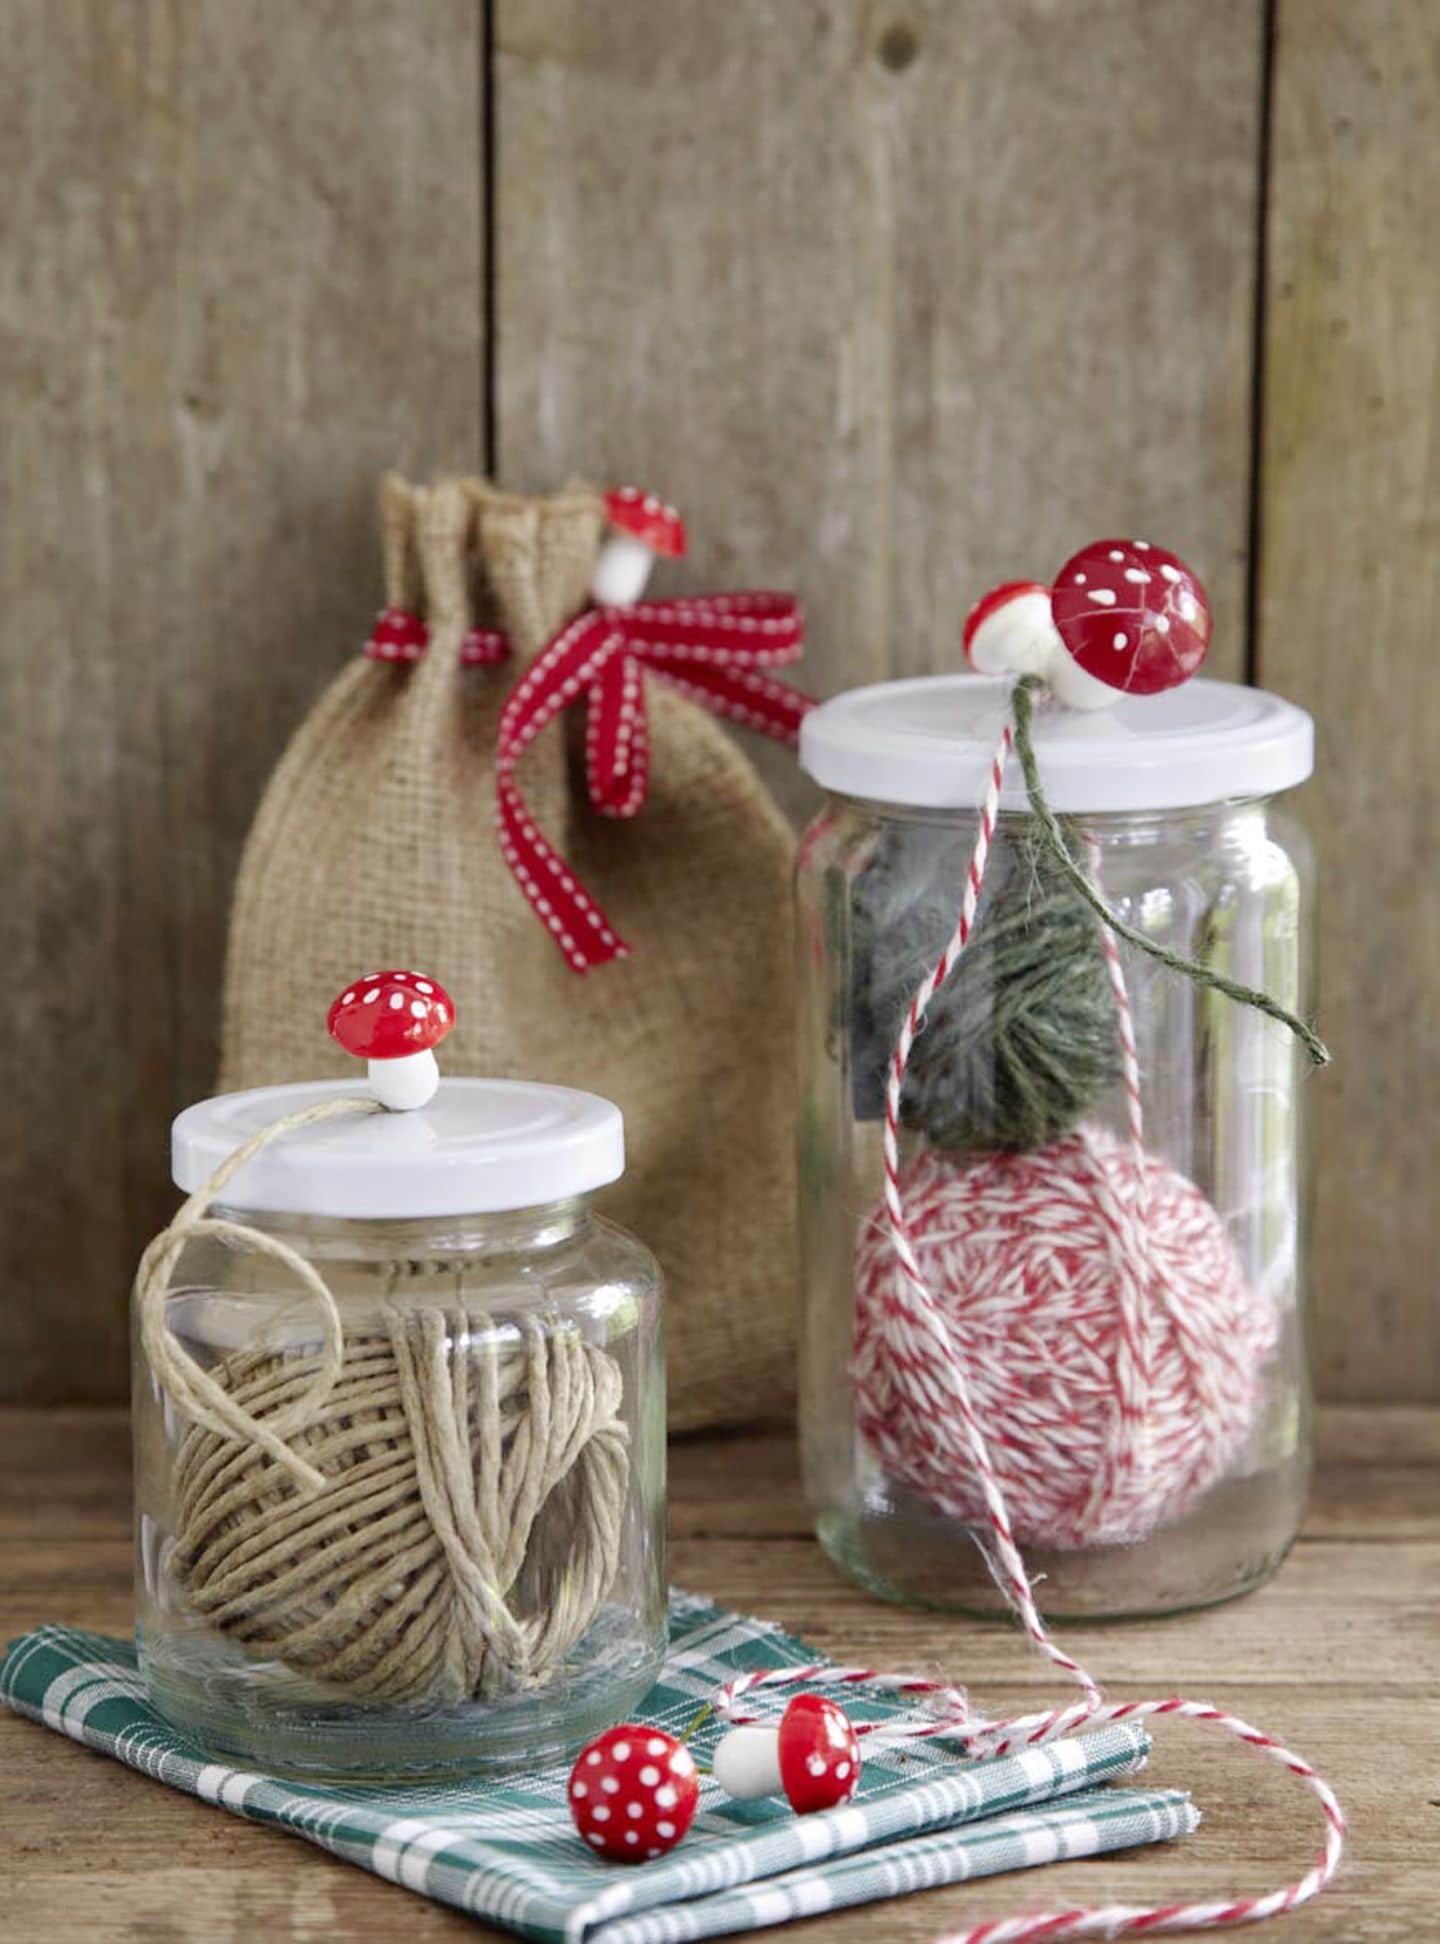 Gartenschnur-Spender aus einem Glas und Dekopilzen als Griff als Last-Minute-Weihnachtsgeschenk